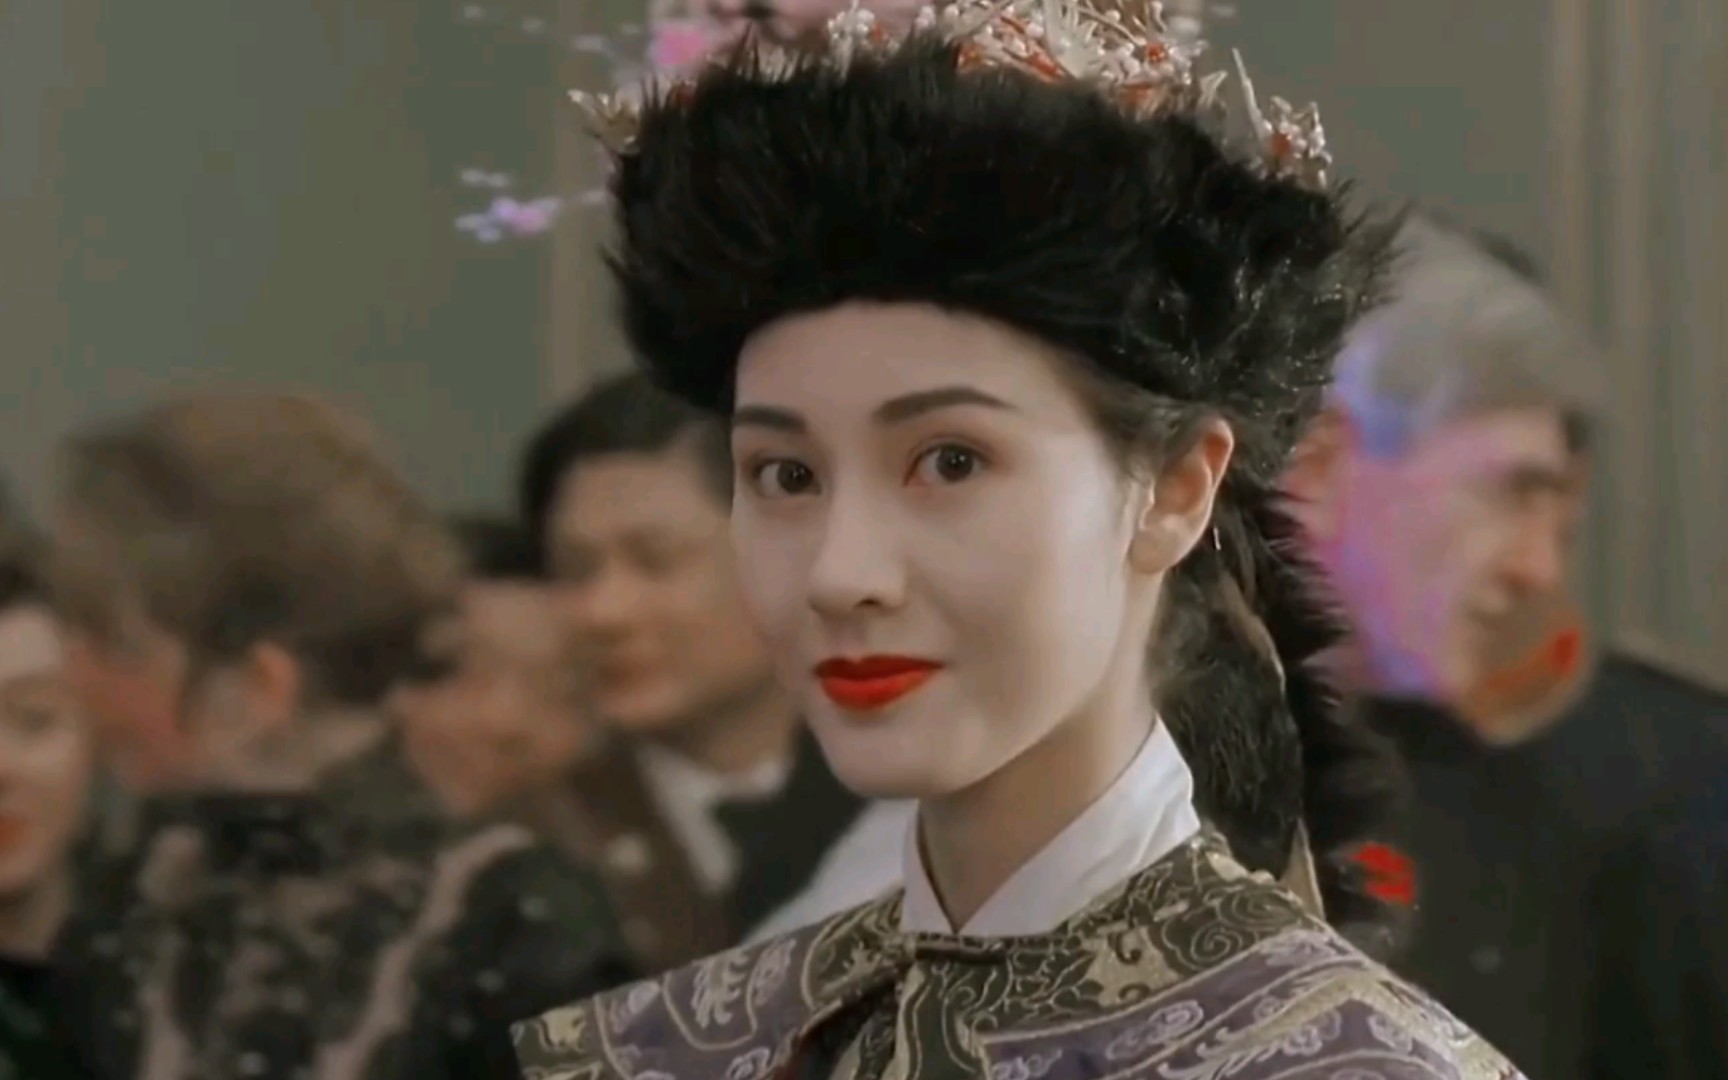 【李嘉欣】香港女神,盛世美颜,身材完美,惊艳了一个时代